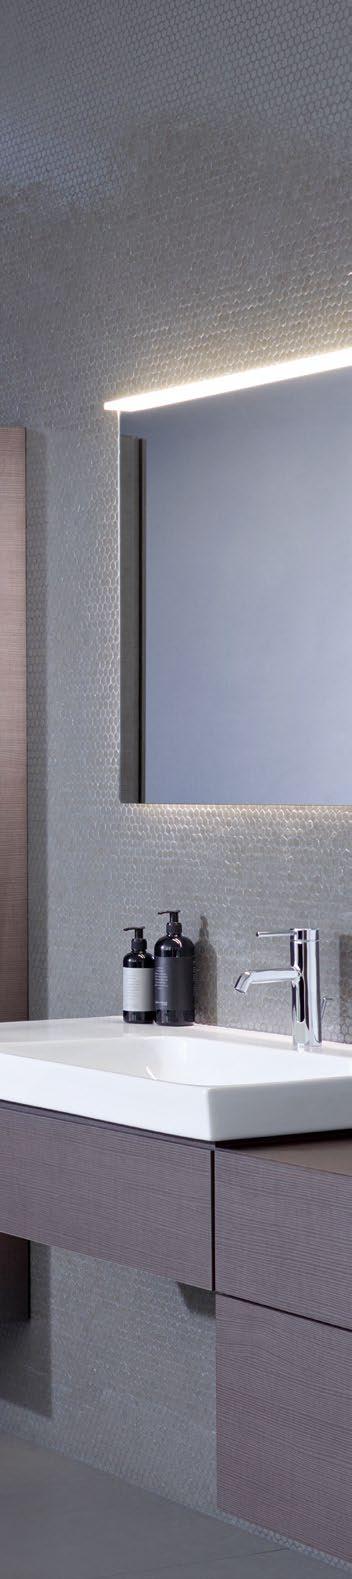 NYHET GEBERIT AQUACLEAN SELA SMART SKJØNNHET Med sitt puristisk-elegante design kan Geberit AquaClean Sela bli en favorittmodell.